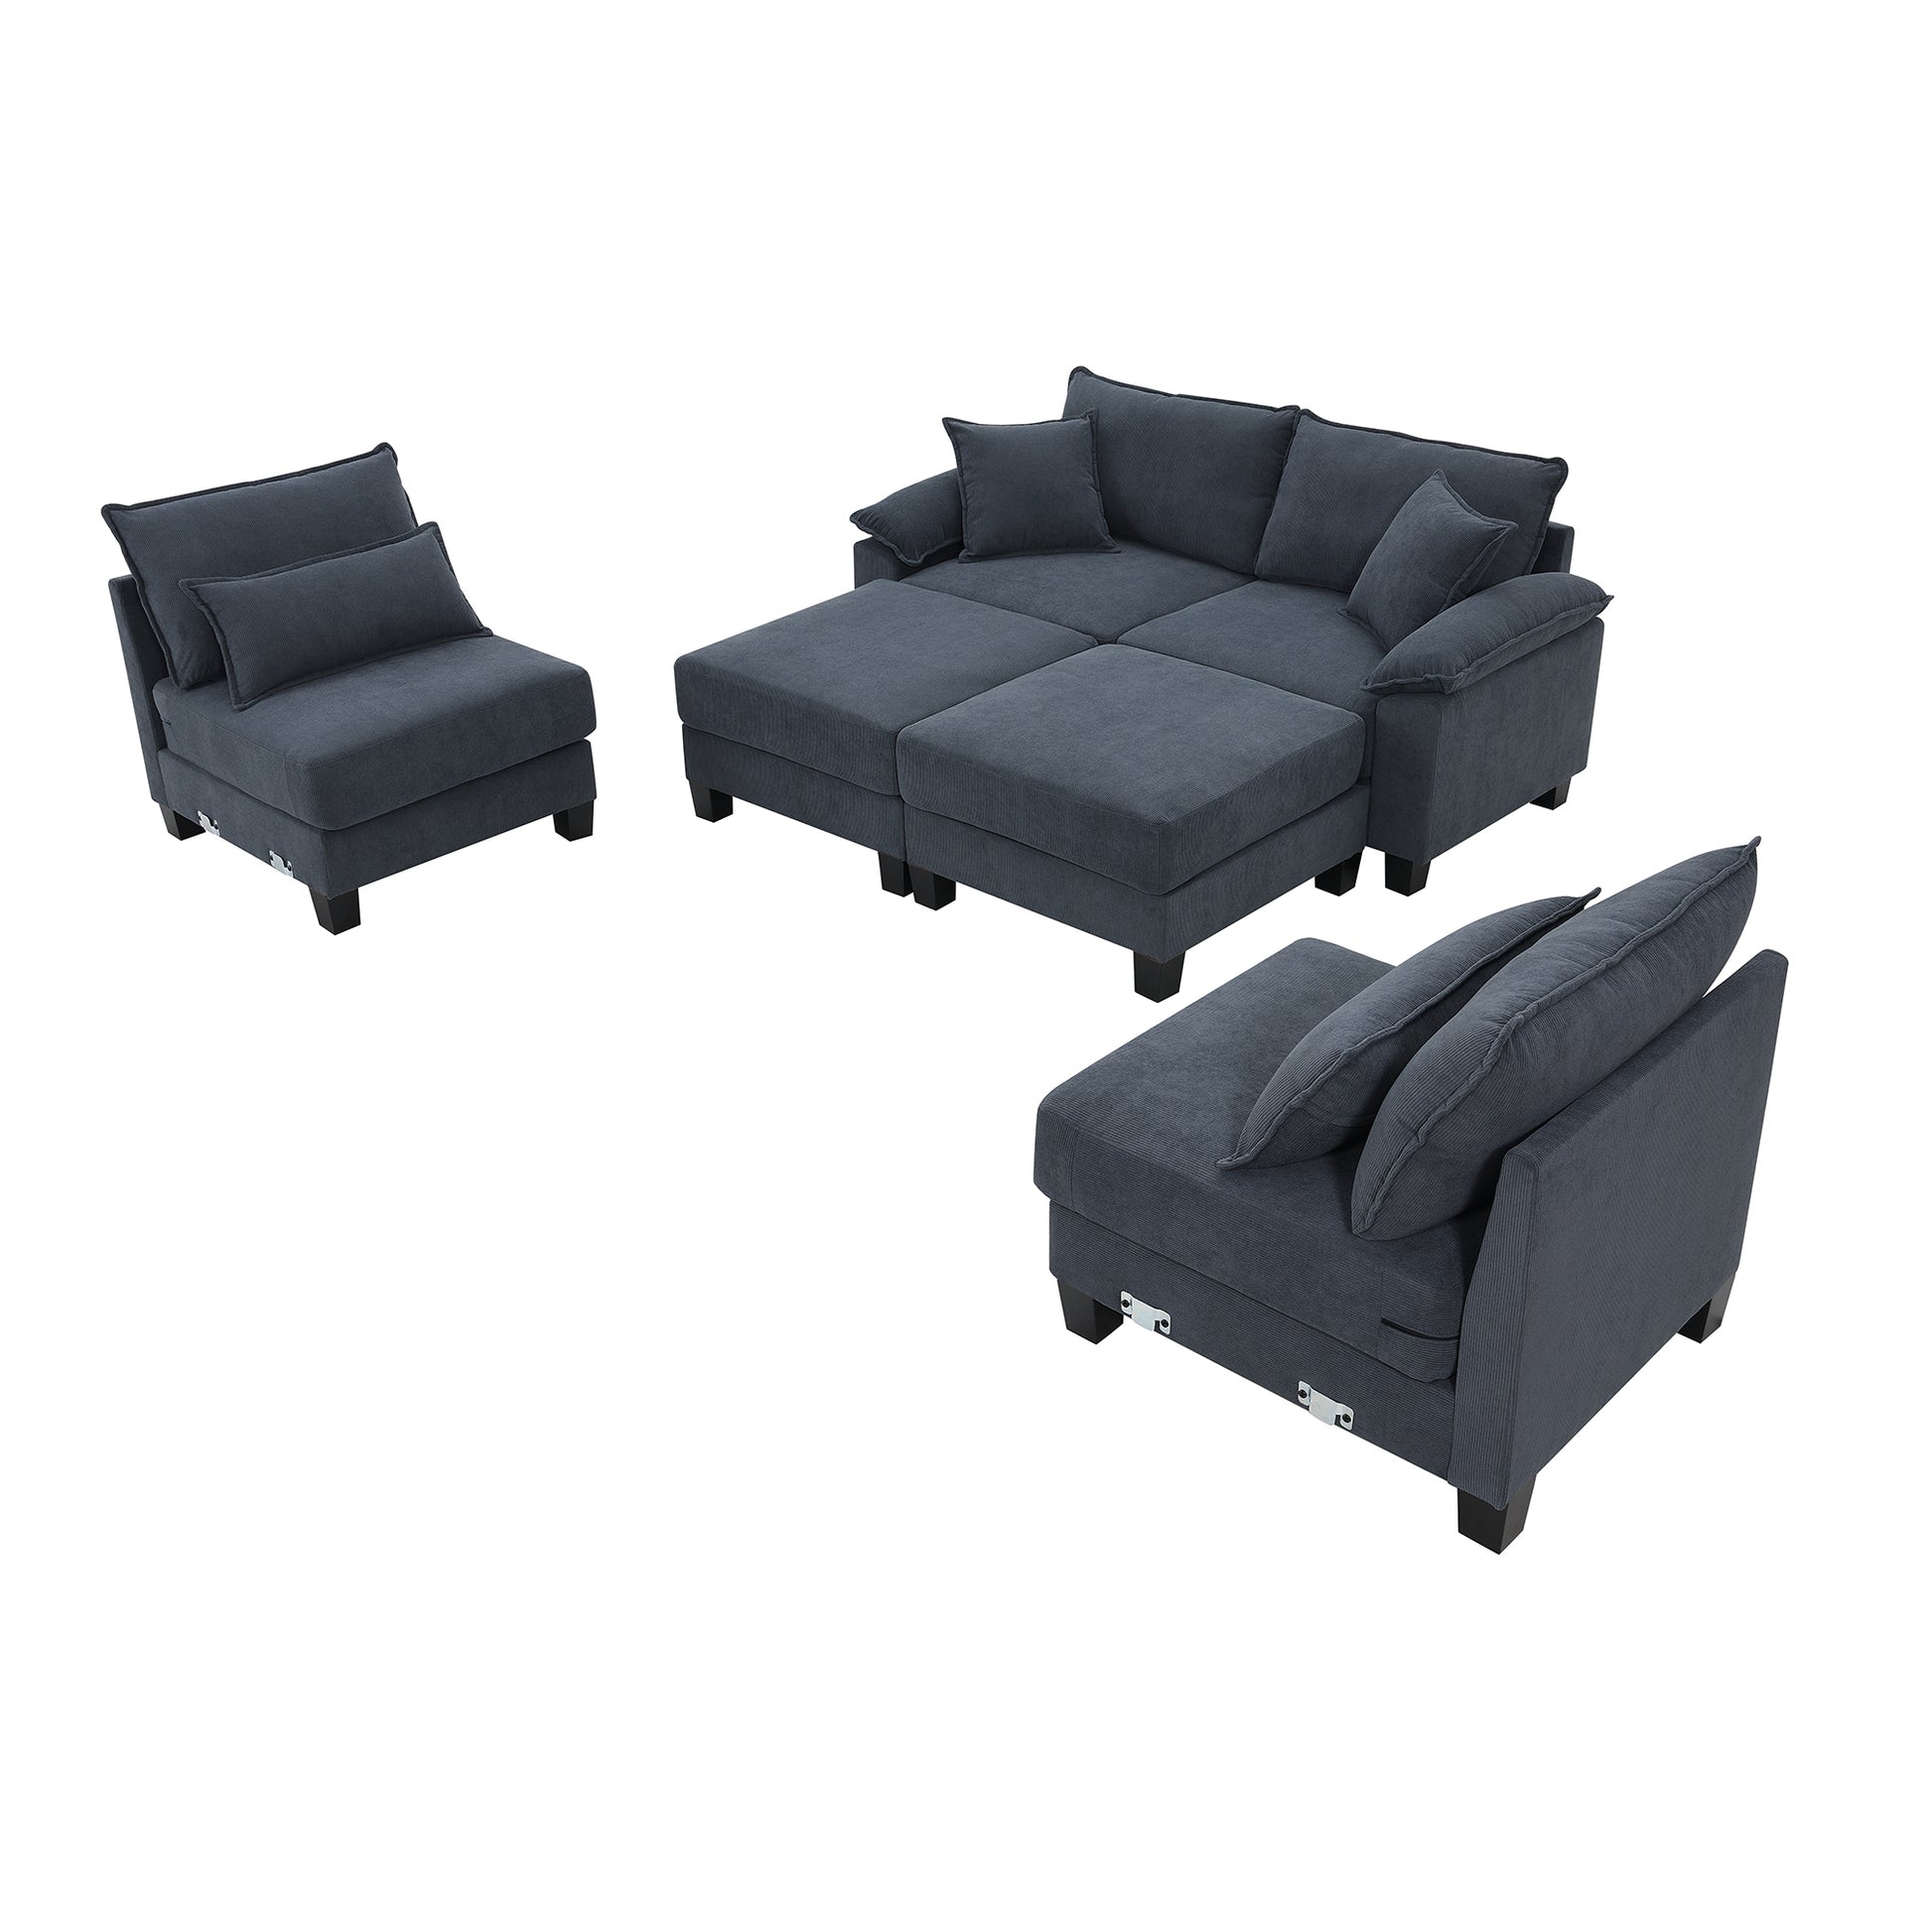 Corduroy U-Shaped Sectional Sofa